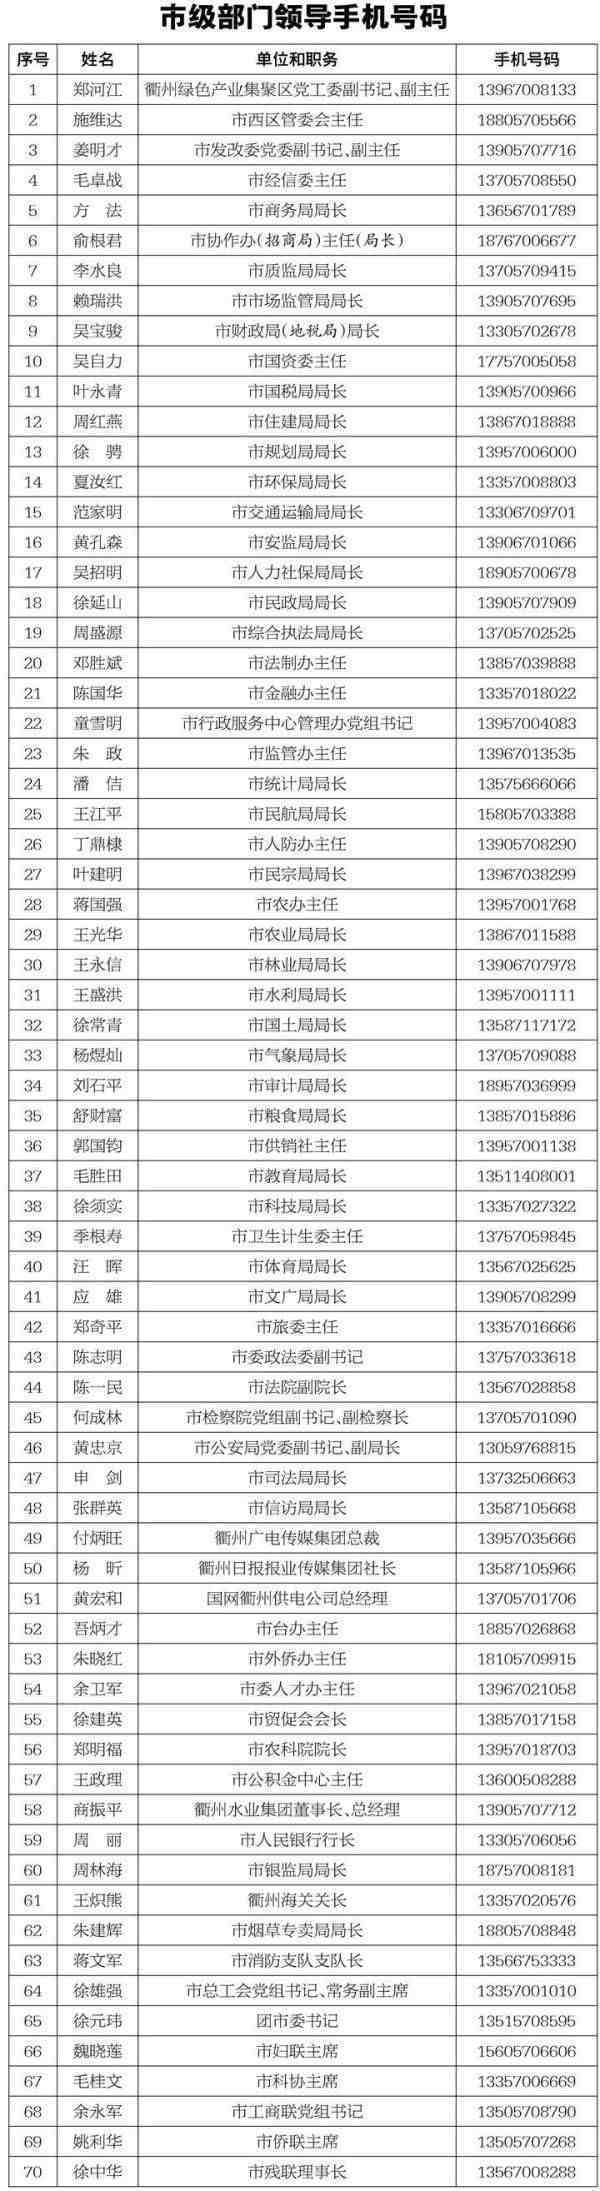 畅通政企沟通渠道，浙江衢州公布70名市级部门领导手机号码